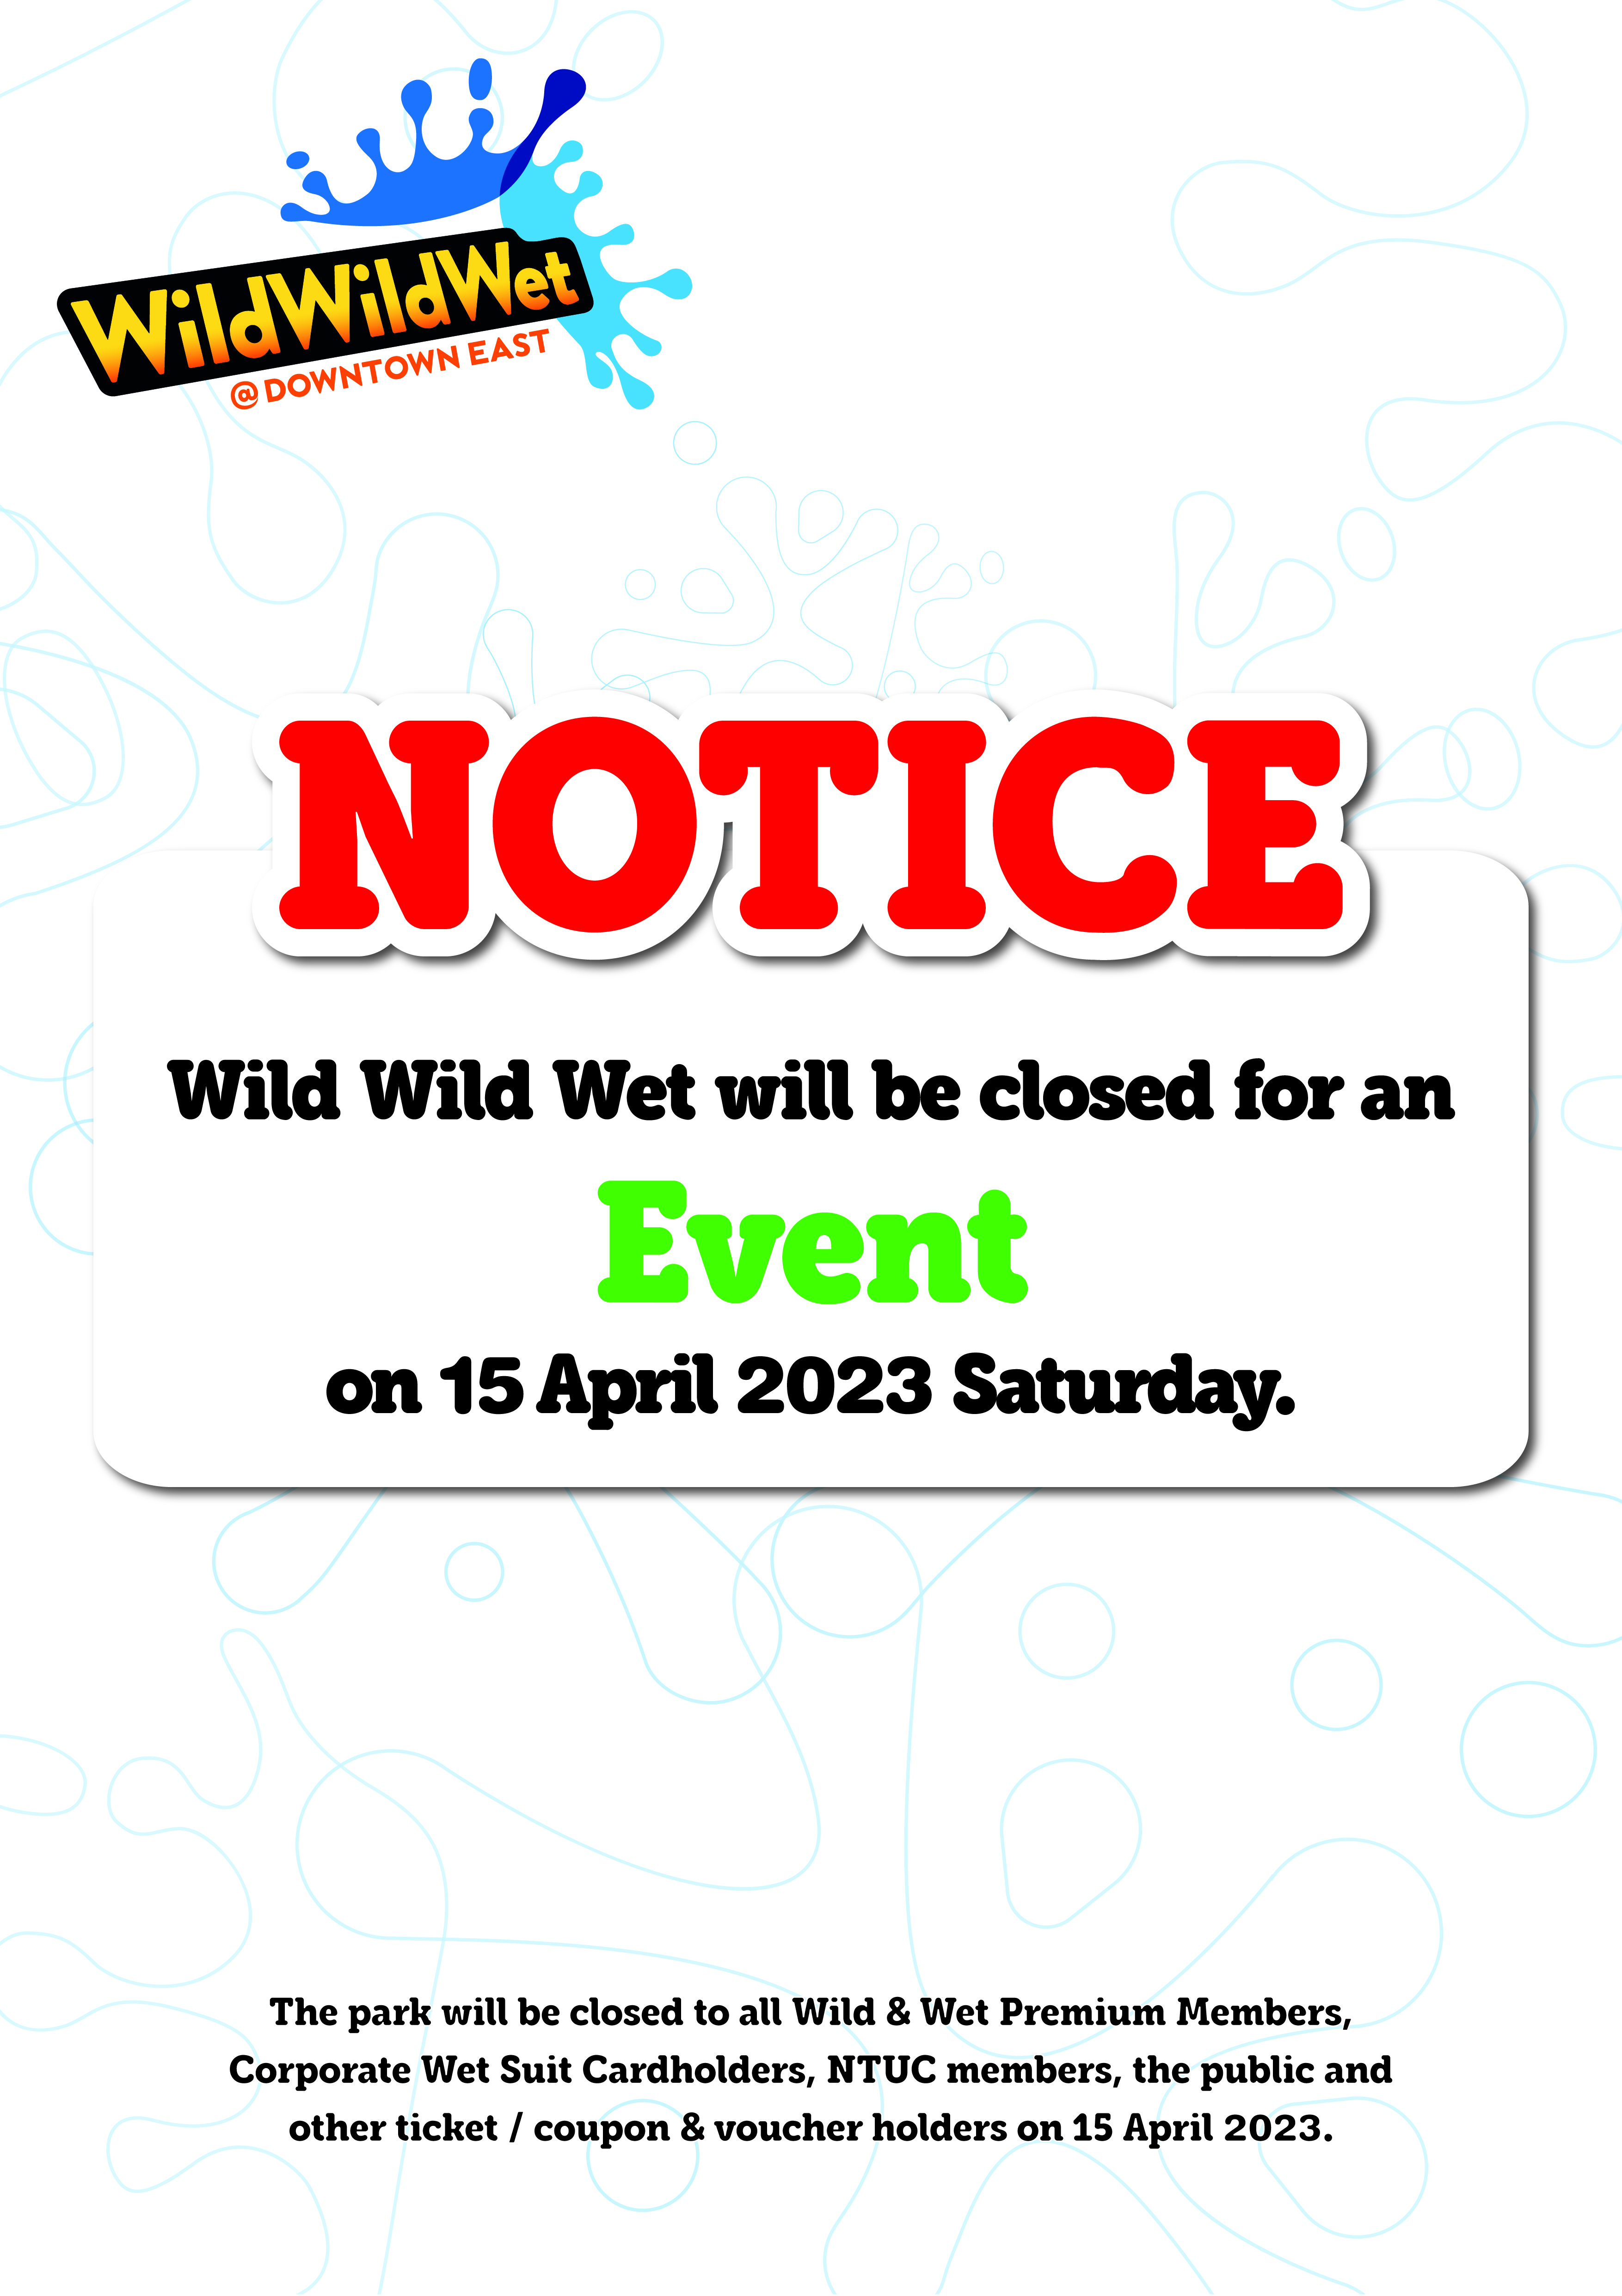 Wild Wild Wet Event Closure 15 Apr 23